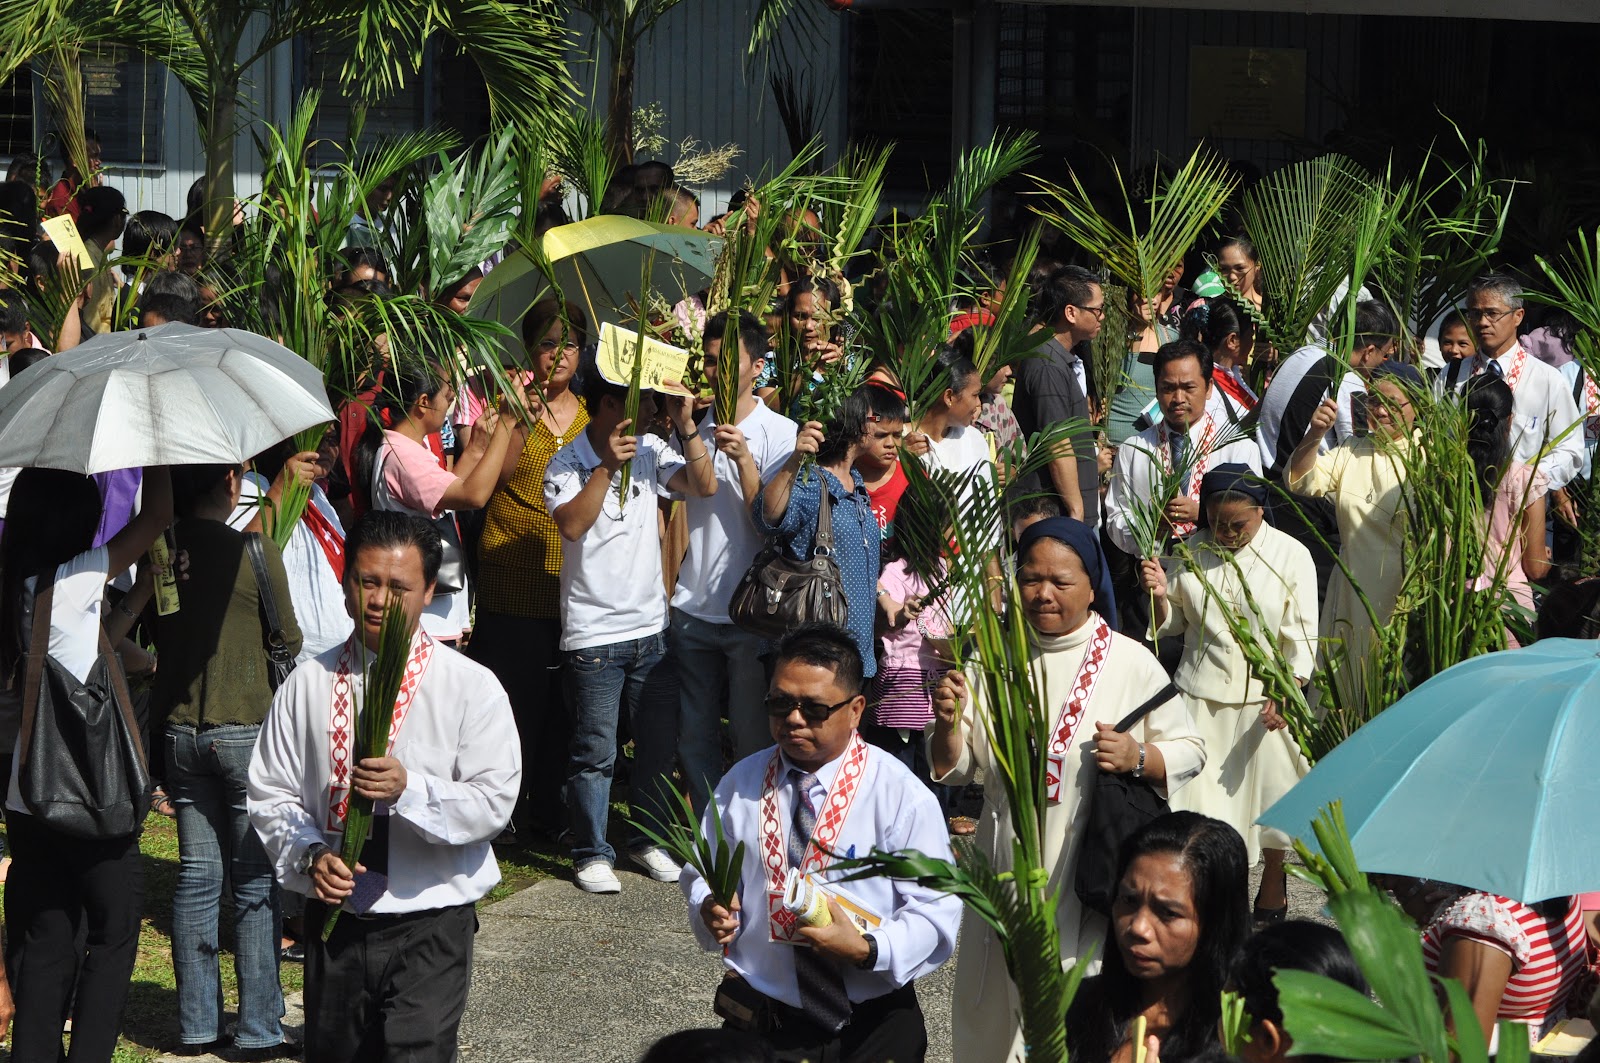 NEWS UPDATE ~ Diocese of Sandakan: MINGGU PALMA MULANYA MINGGU SUCI